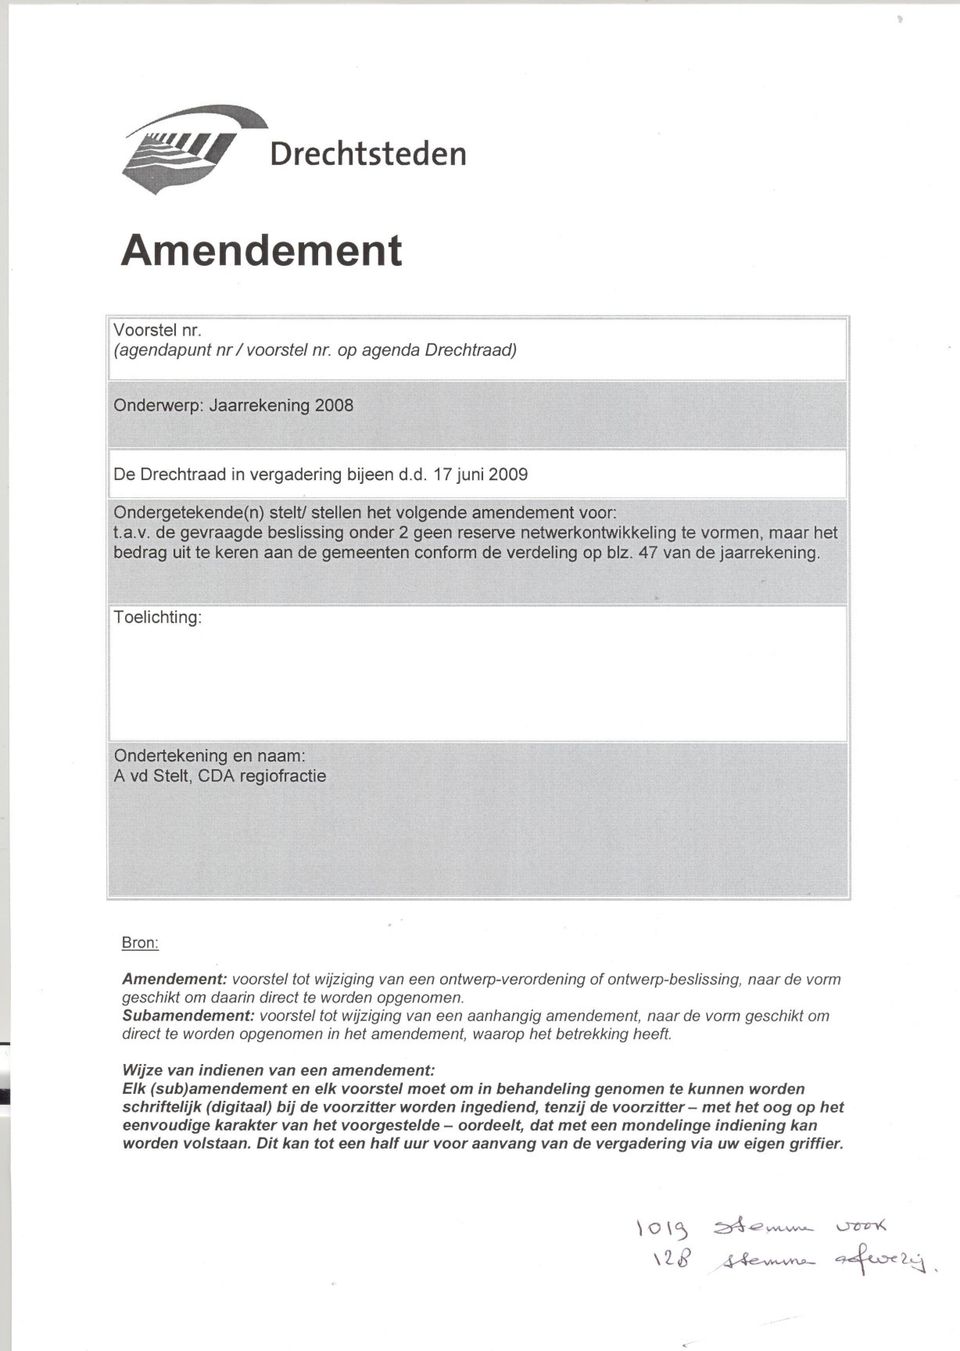 Subamendement: voorstel tot wijziging van een aanhangig amendement, naar de vorm geschikt om direct te worden opgenomen in het amendement, waarop het betrekking heeft.